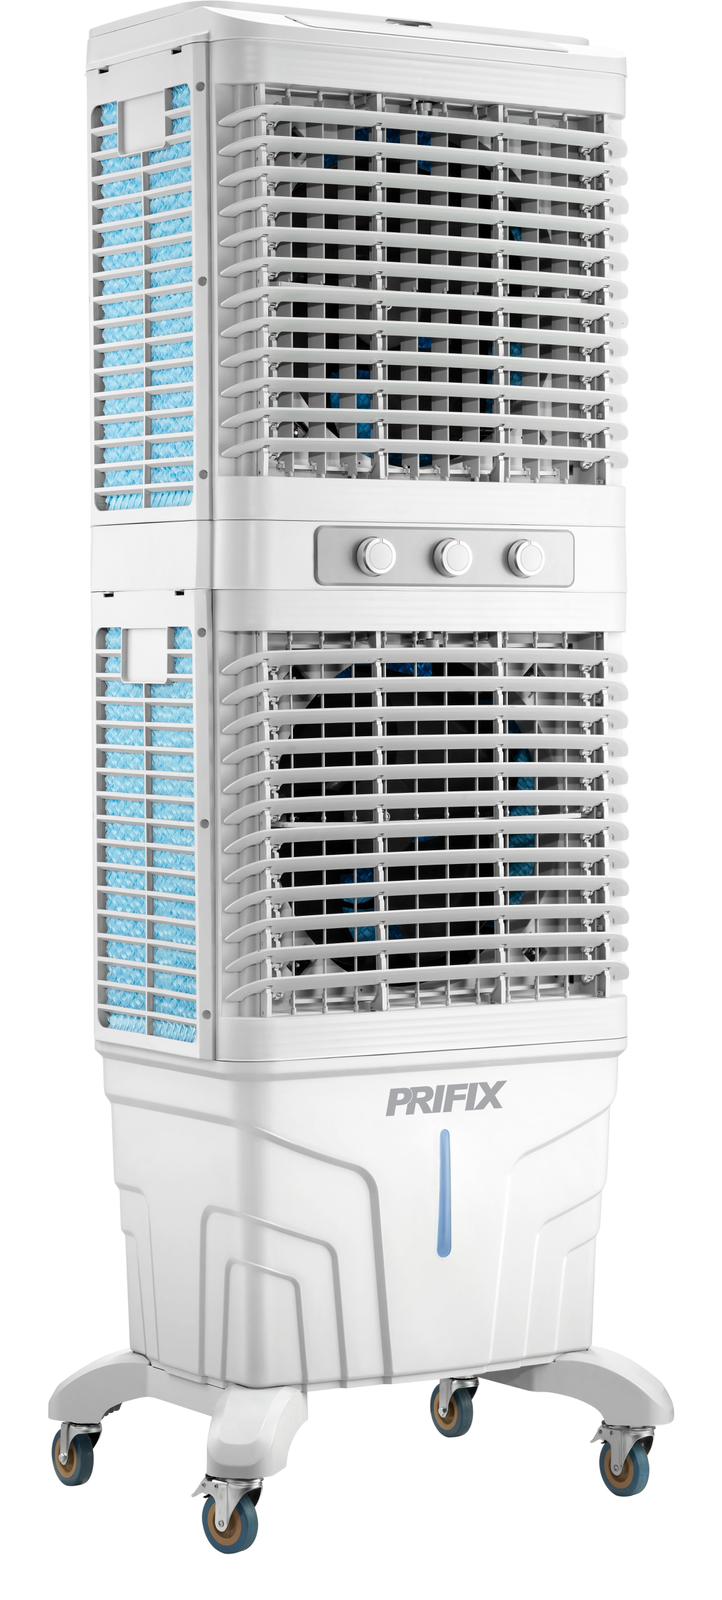 Prifix Air Cooler double